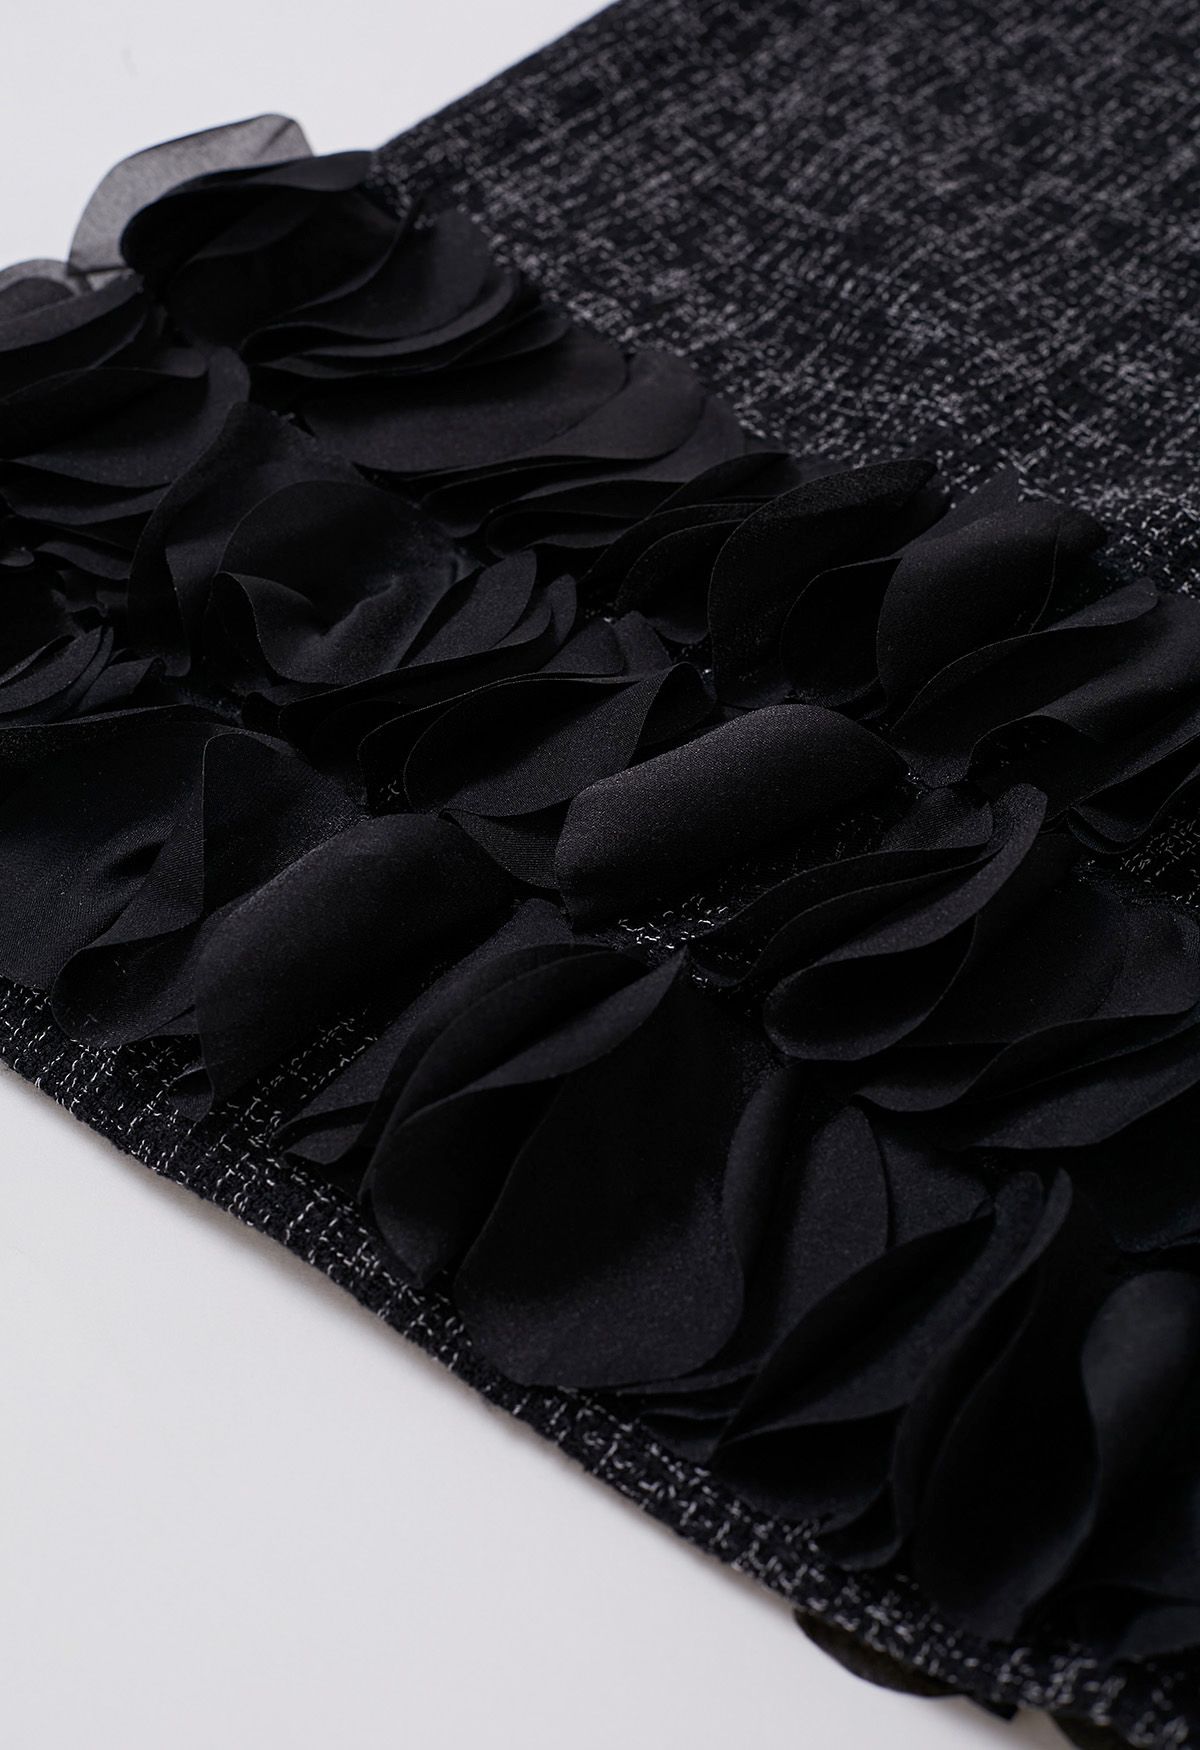 Vestido sin mangas de tweed con dobladillo de pétalos 3D en negro